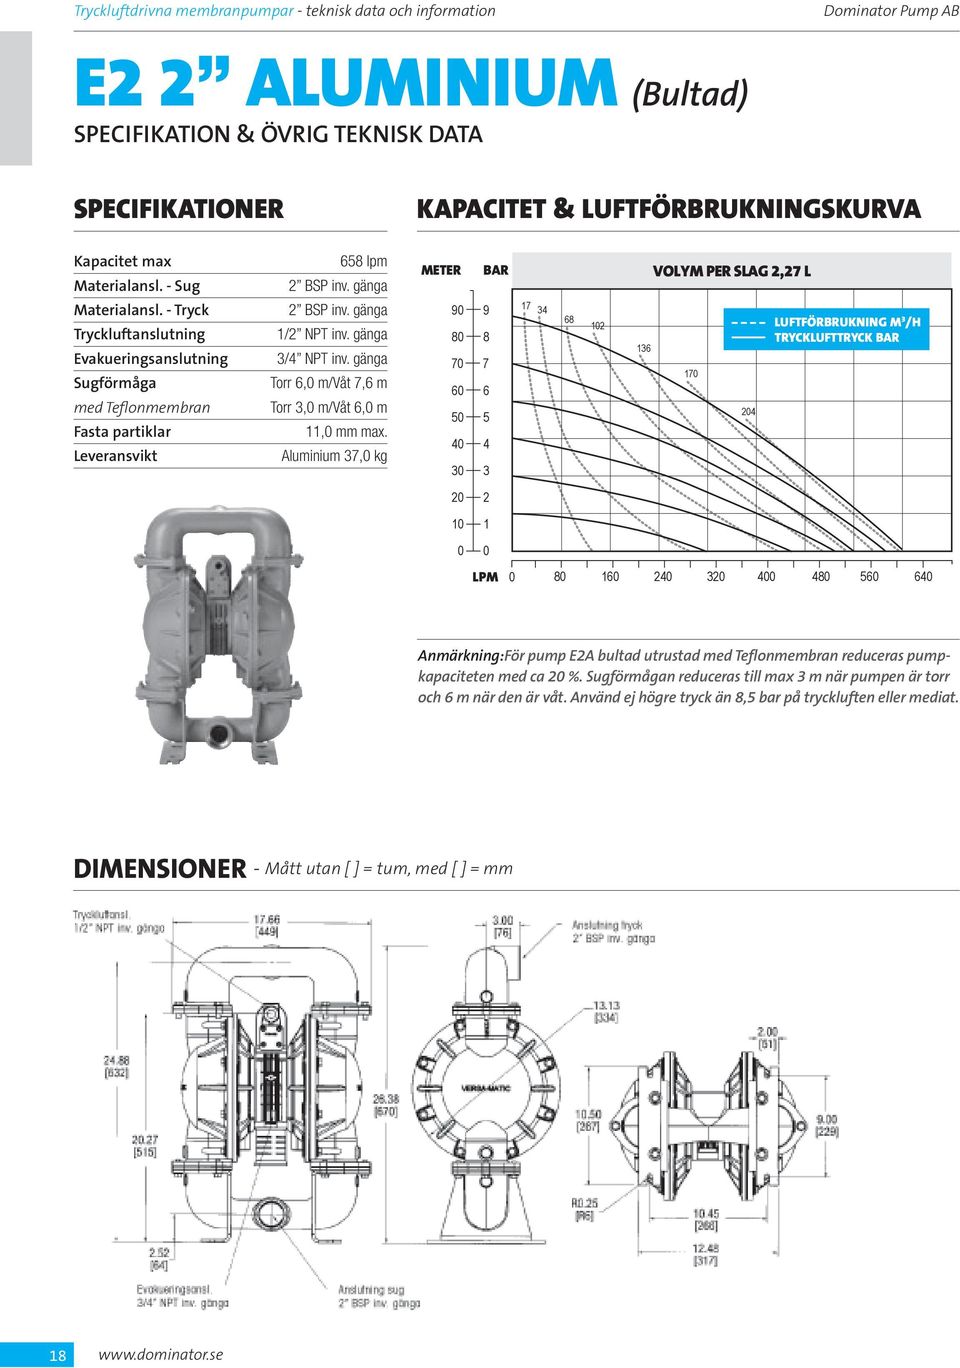 Aluminium, kg VOLYM PER SLAG, L luftförbrukning M /H Anmärkning:För pump EA bultad utrustad med Teflonmembran reduceras pumpkapaciteten med ca %.